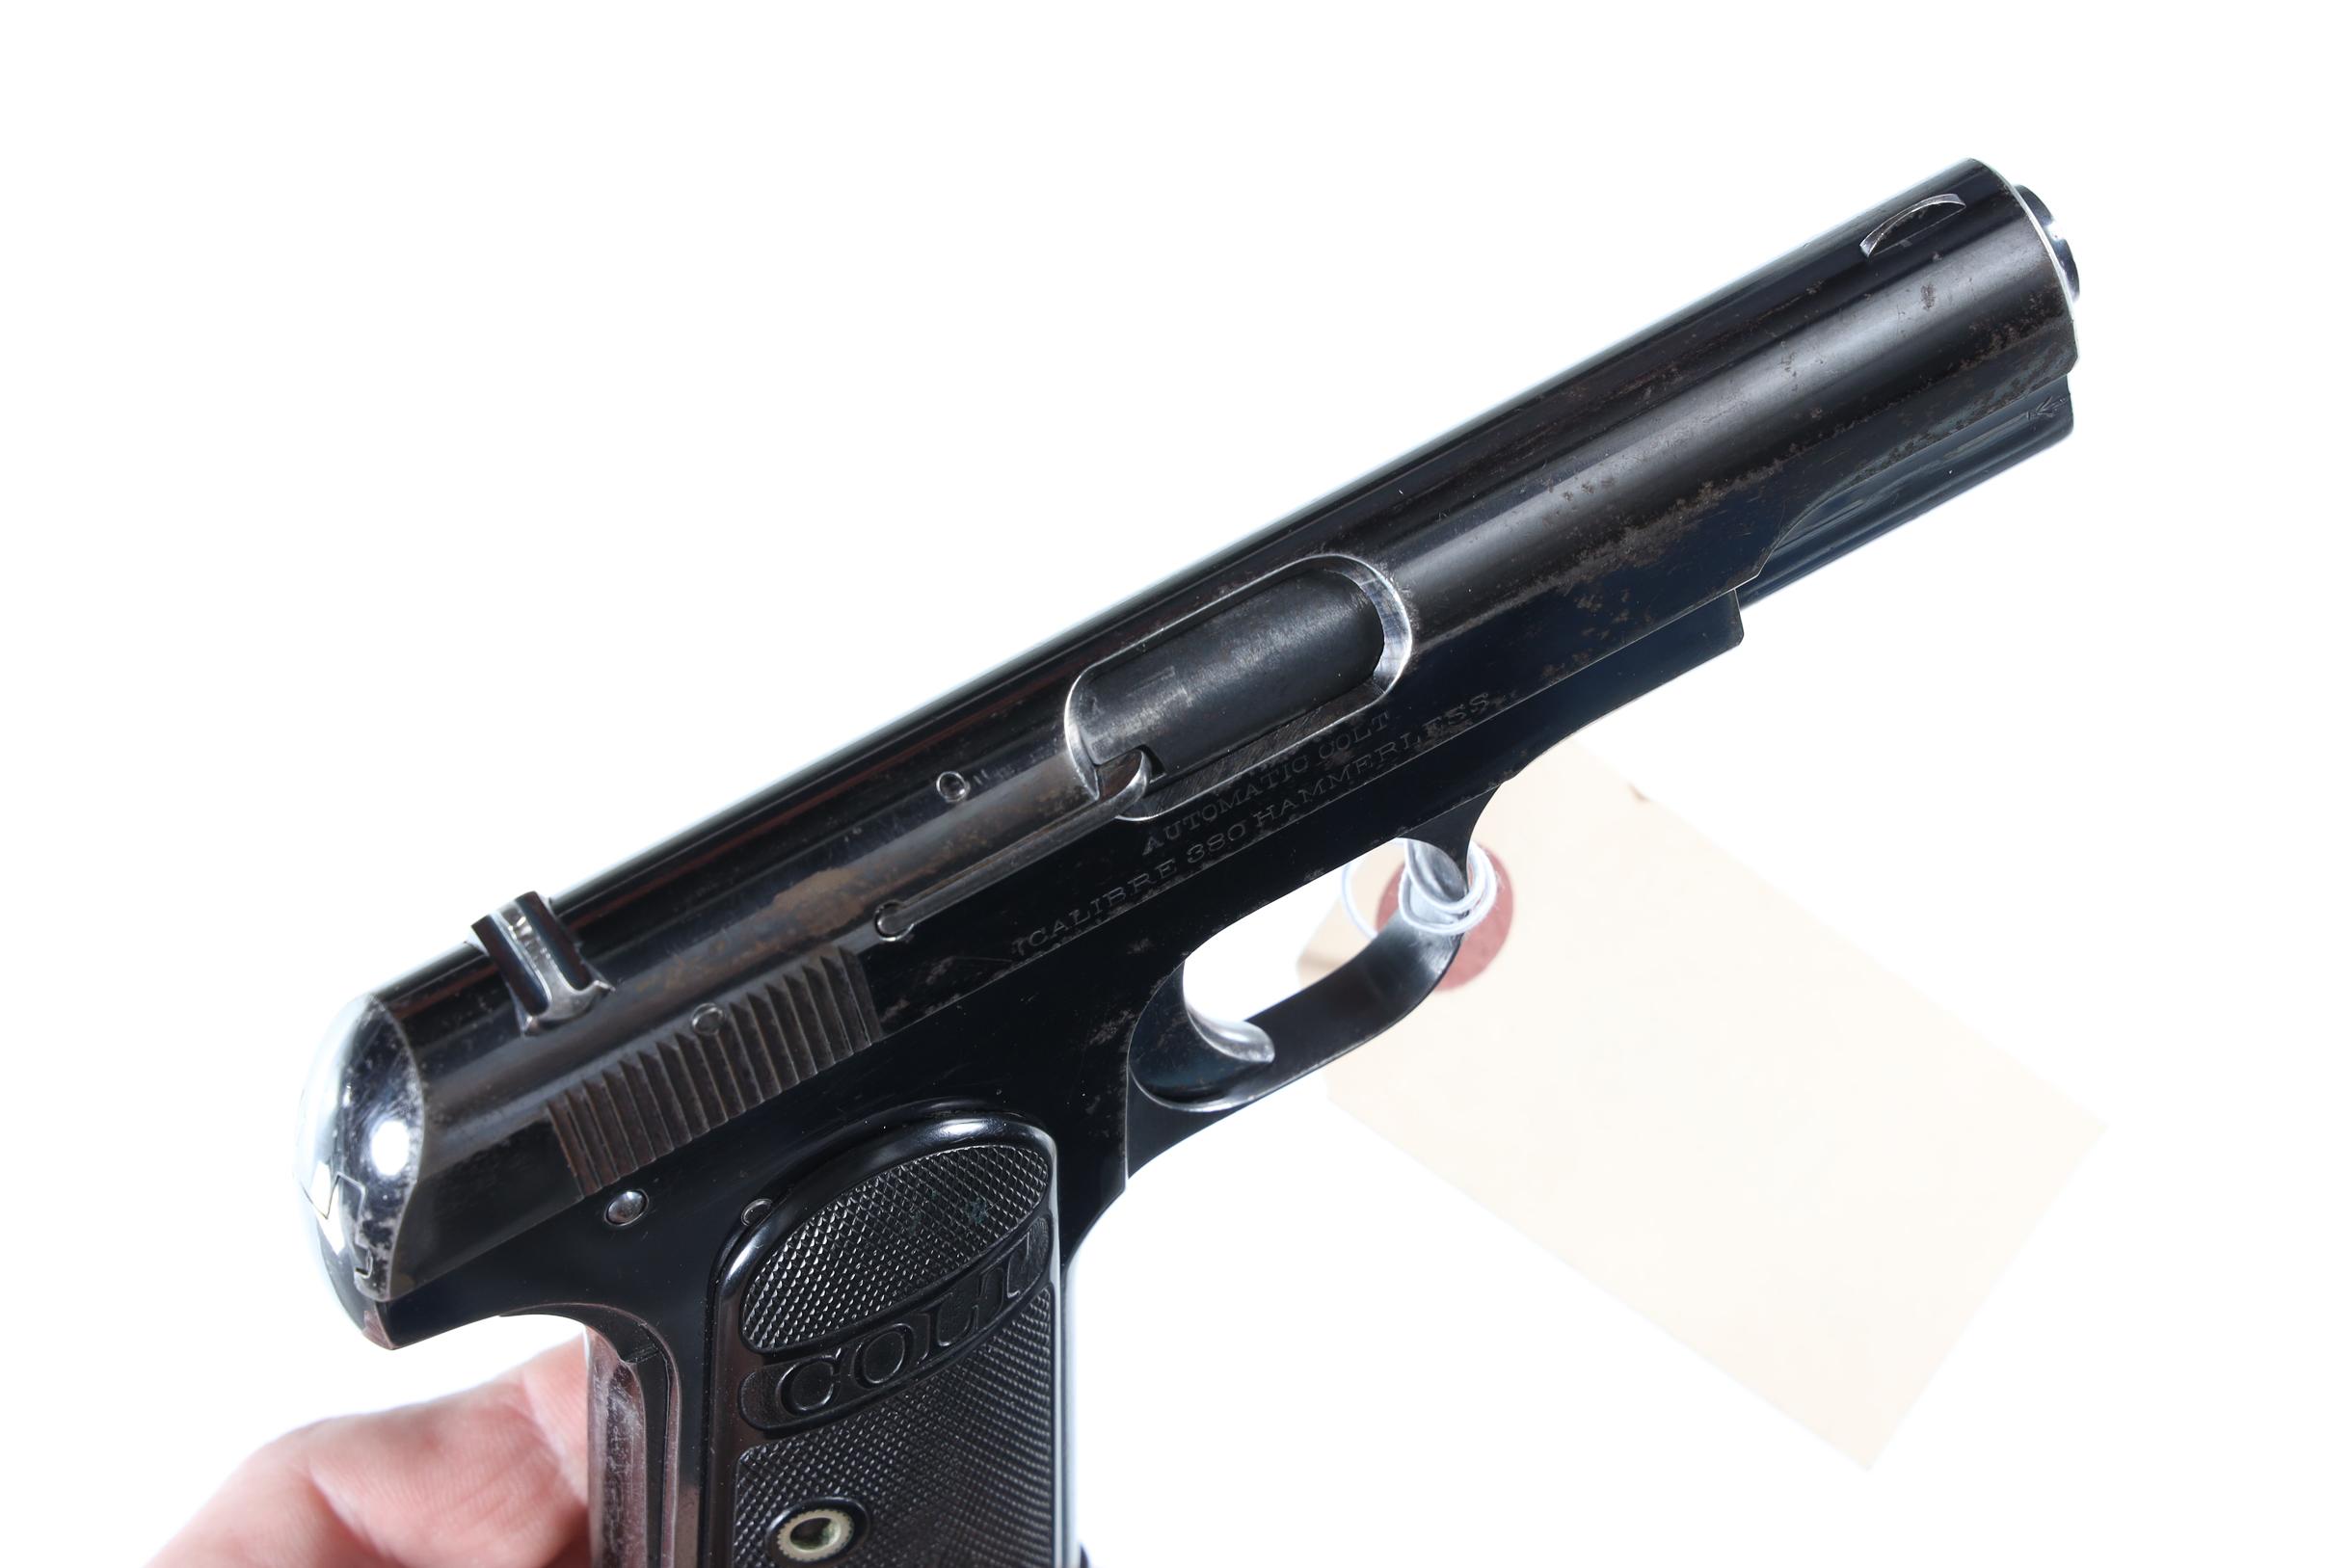 Colt 1908 Pocket Hammerless Pistol .380 ACP